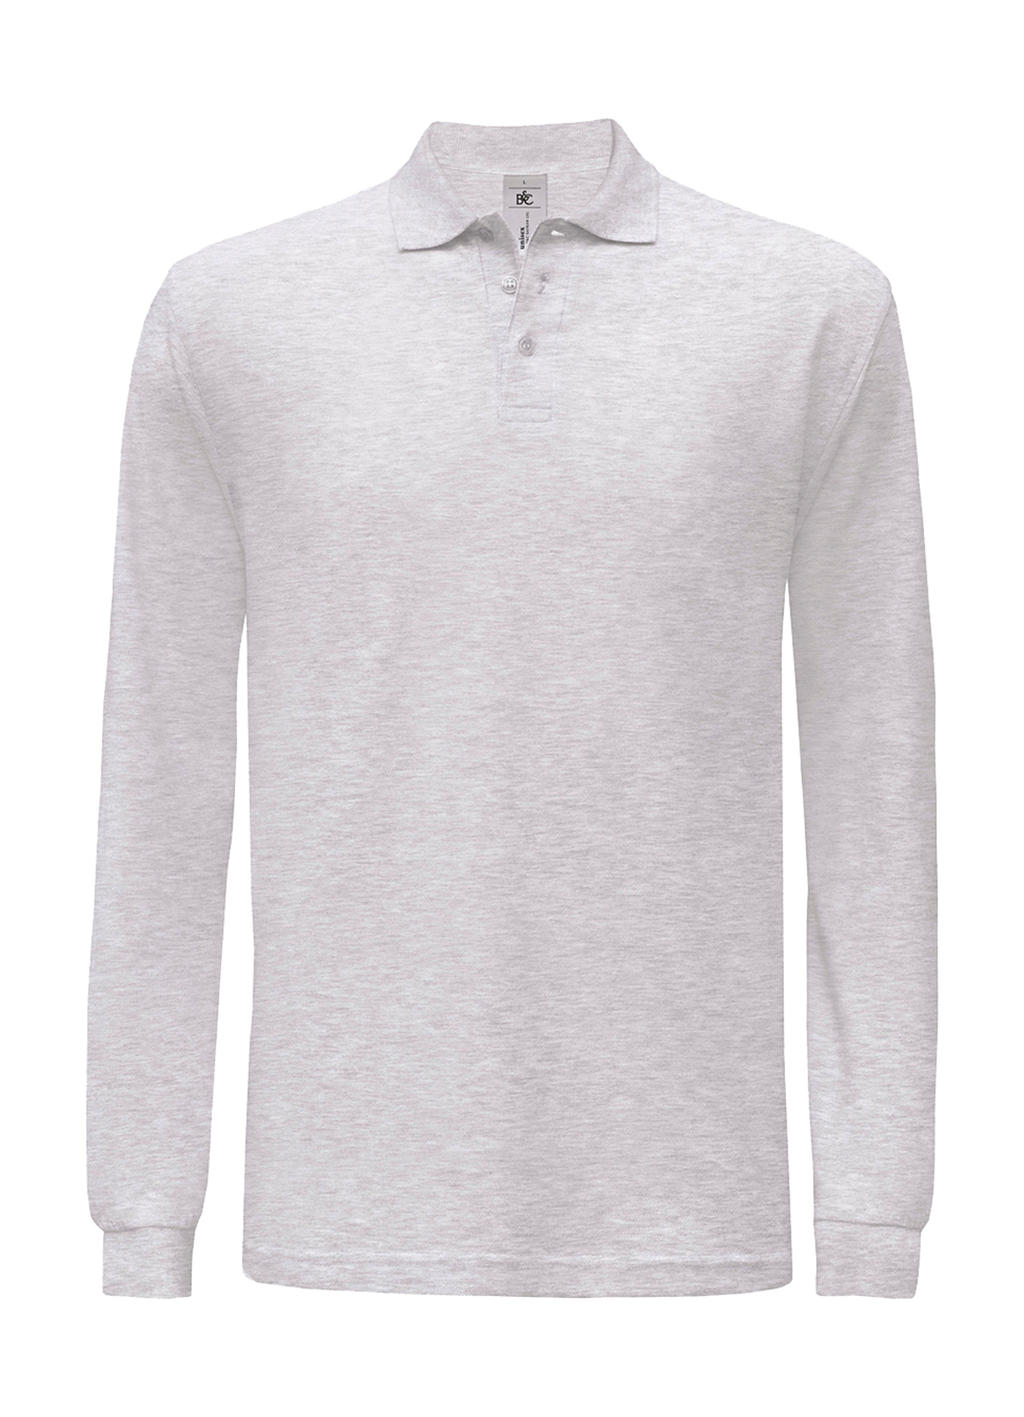 Pánské polo tričko B&C Safran s dlouhým rukávem - světle šedé, XL